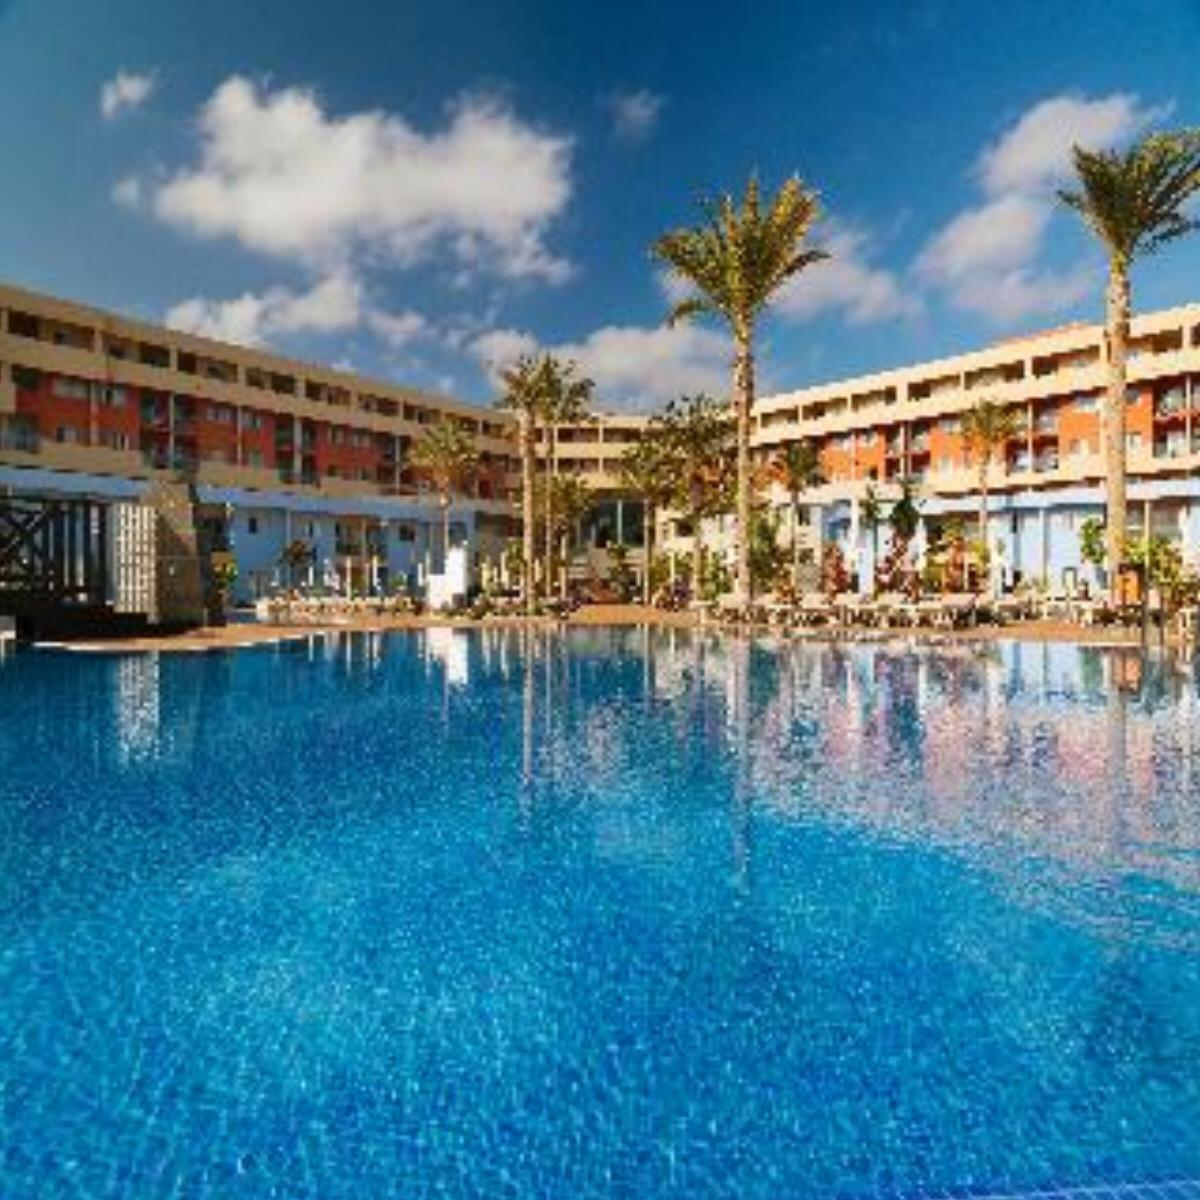 Iberostar Fuerteventura Park Suites Hotel Hotel Fuerteventura Spain